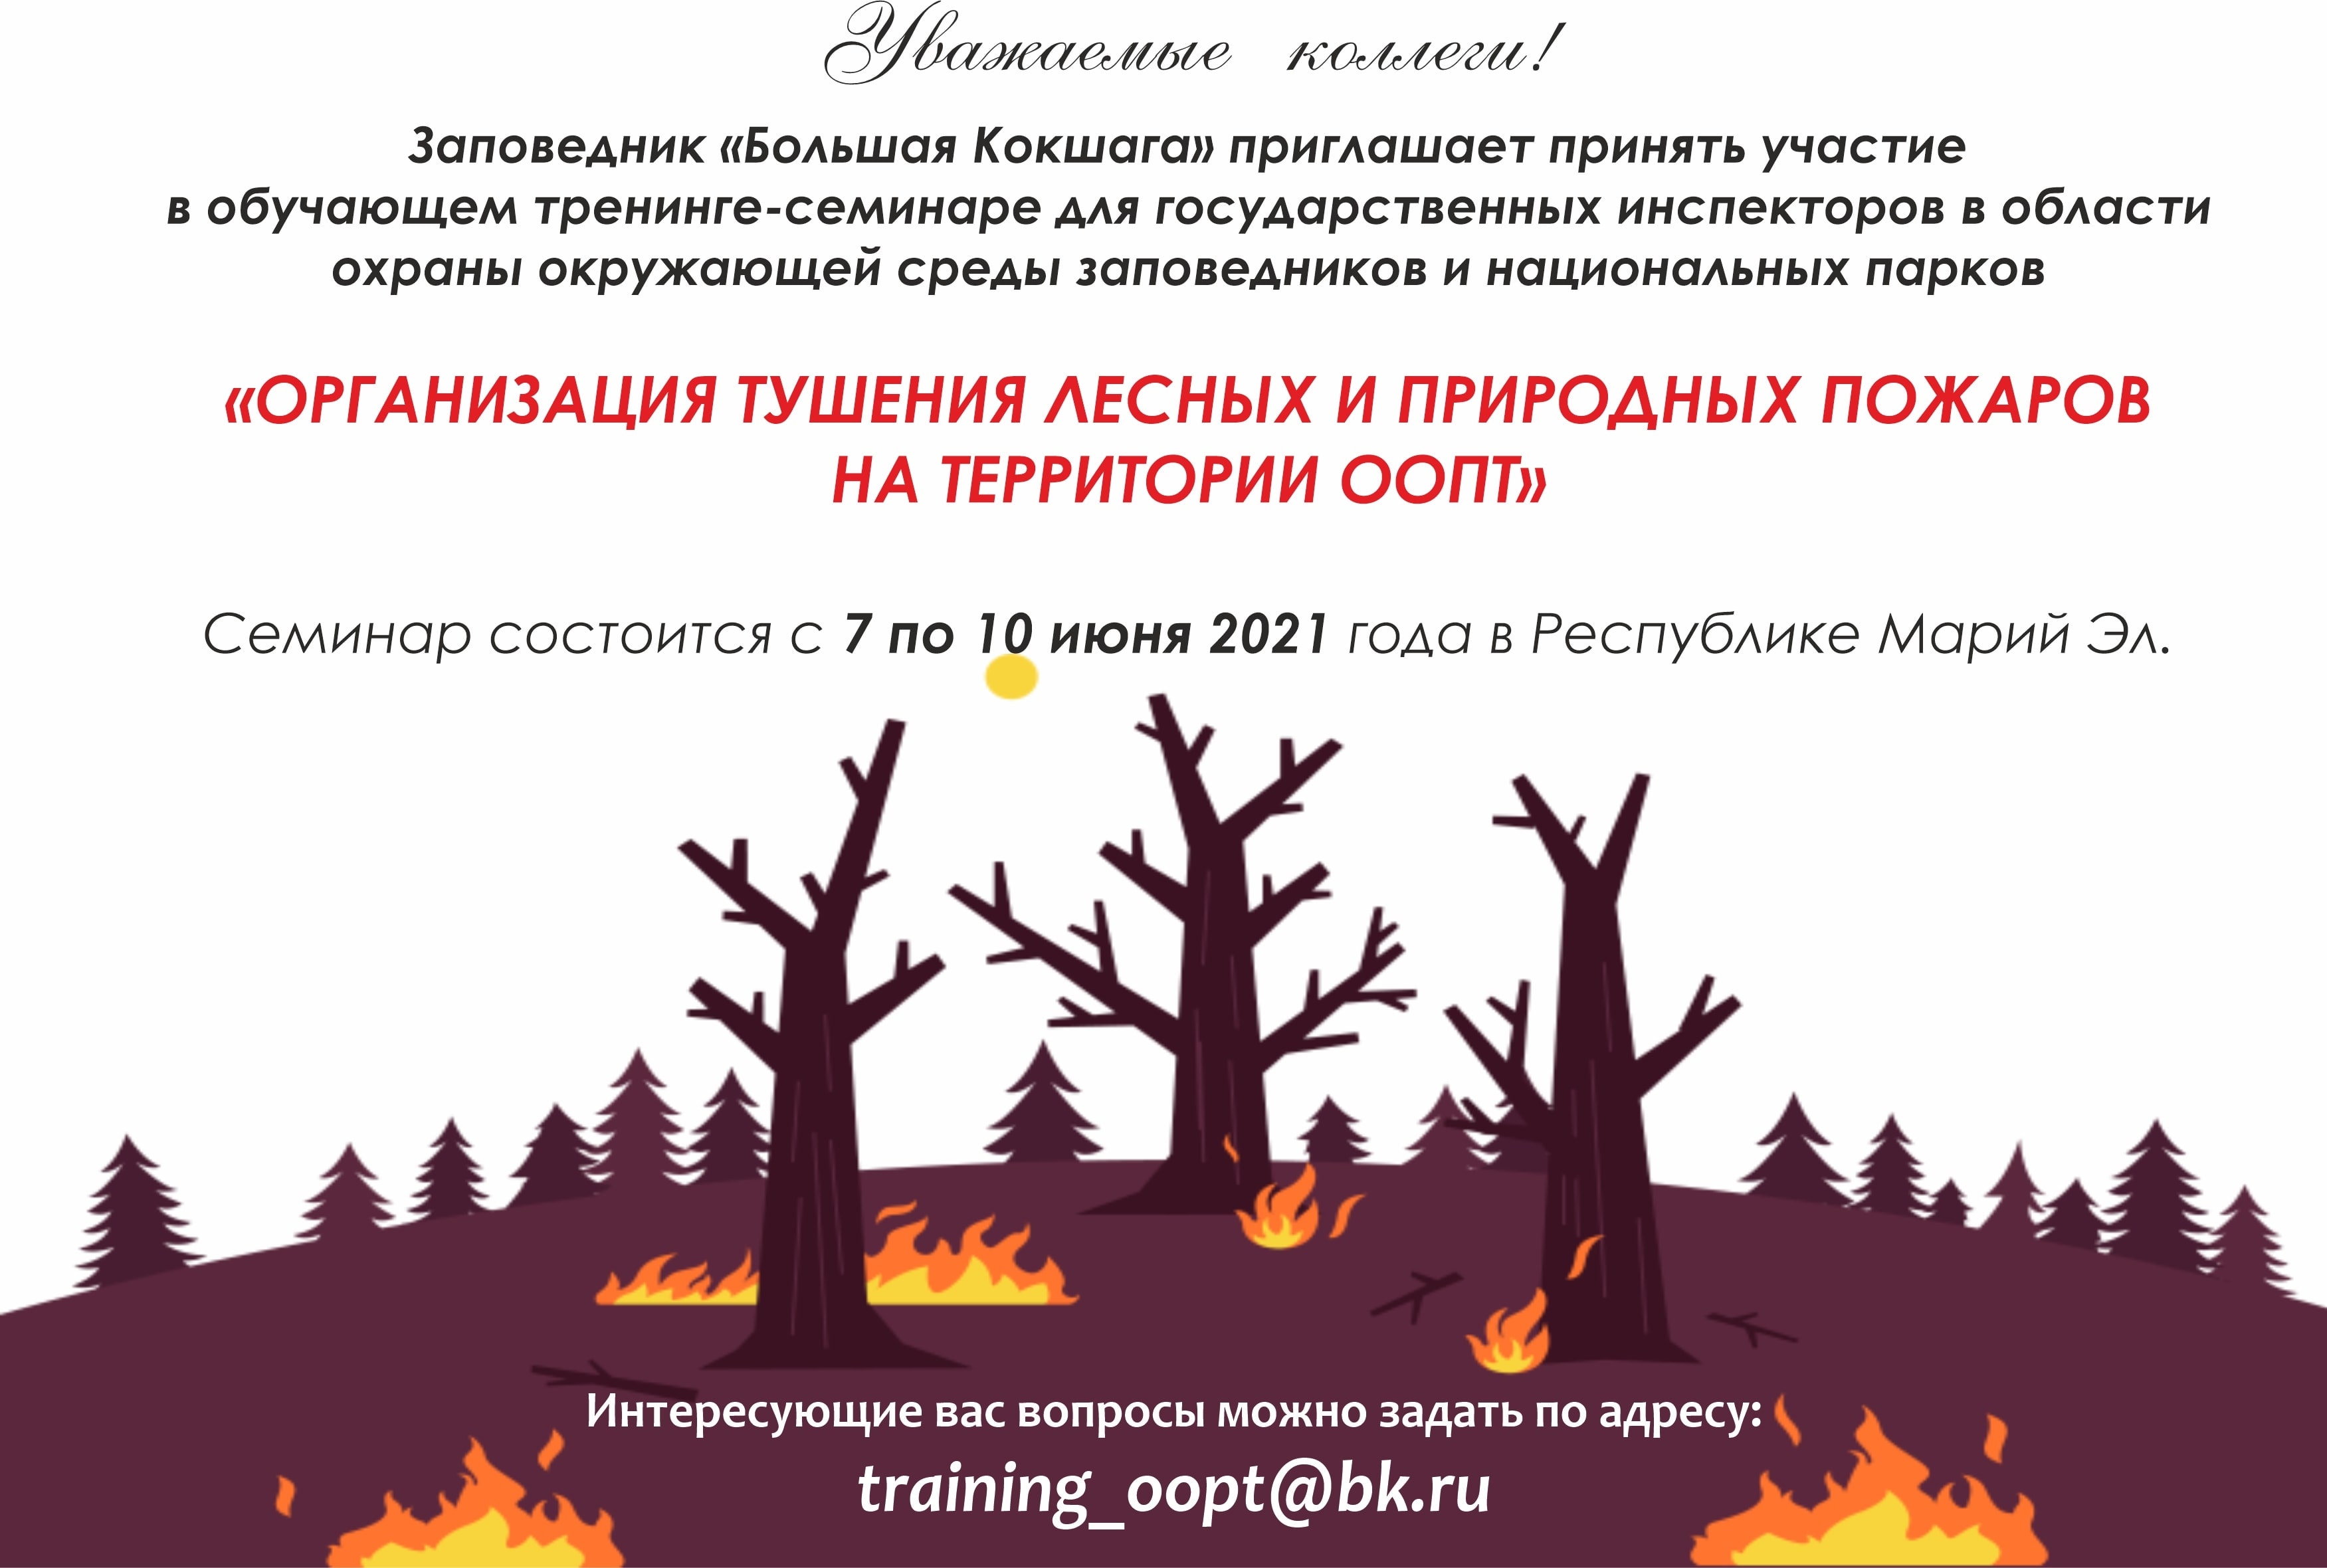 Приглашаем на семинар-тренинг "Организация тушения лесных и природных пожаров на территории ООПТ"